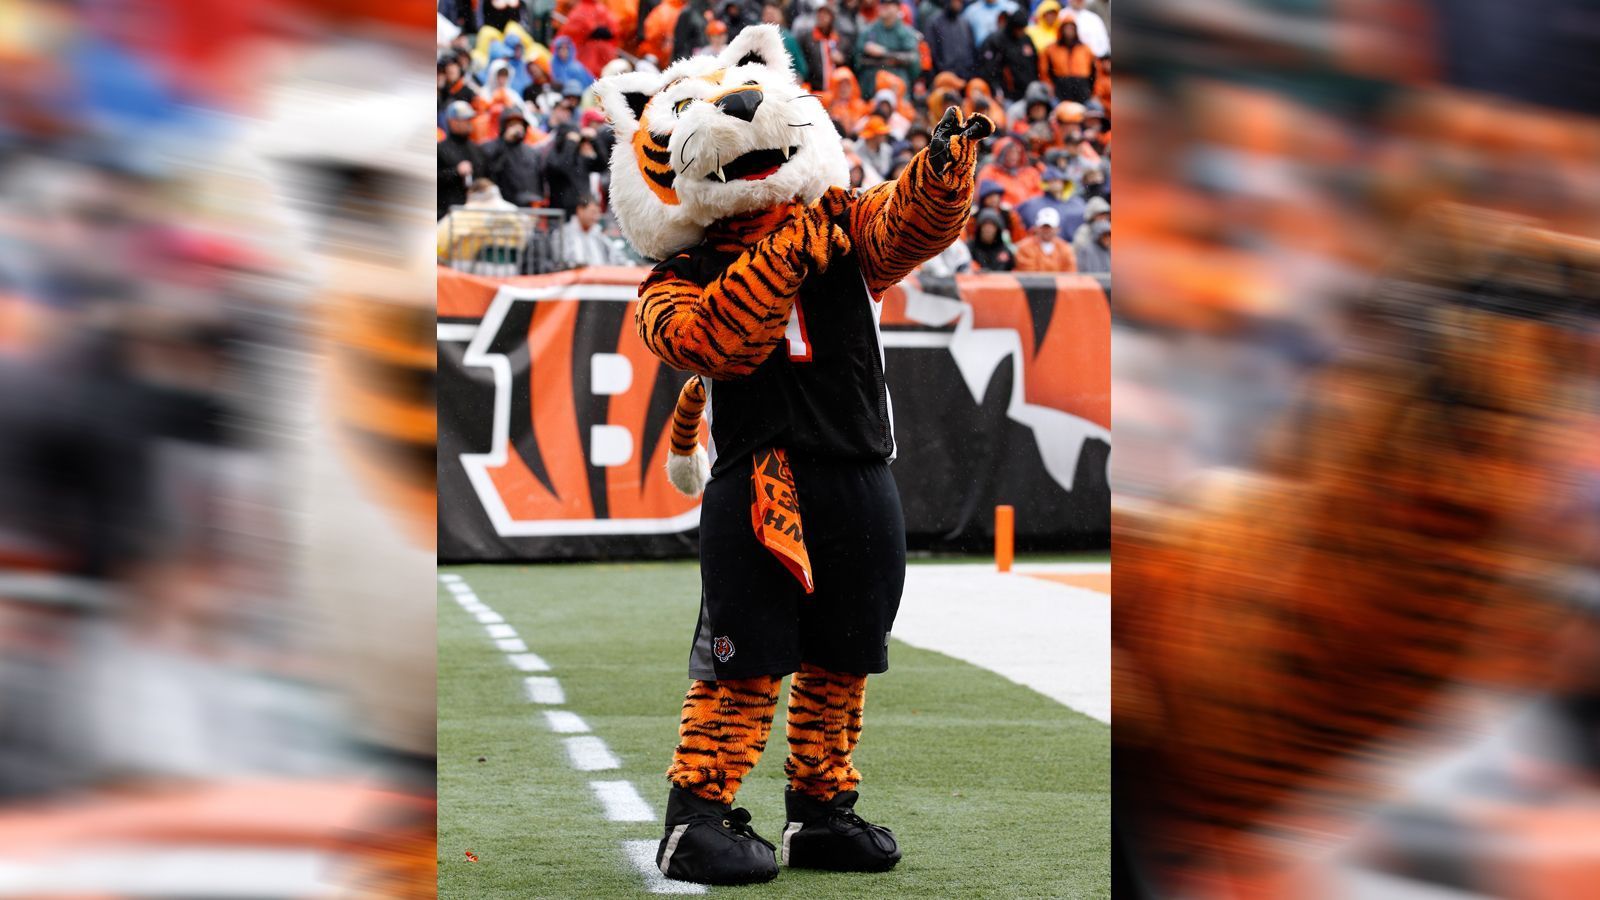 
                <strong>Cincinnati Bengals: Who Dey</strong><br>
                Der Tiger aus Cincinnati hört auf den Namen Who Dey. Benannt ist er nach einem bekannten Gesang der Bengals-Fans: "Who dey think gonna beat dem bengals?" ("Wer sind sie, dass sie denken, sie könnten die Bengals schlagen?")
              